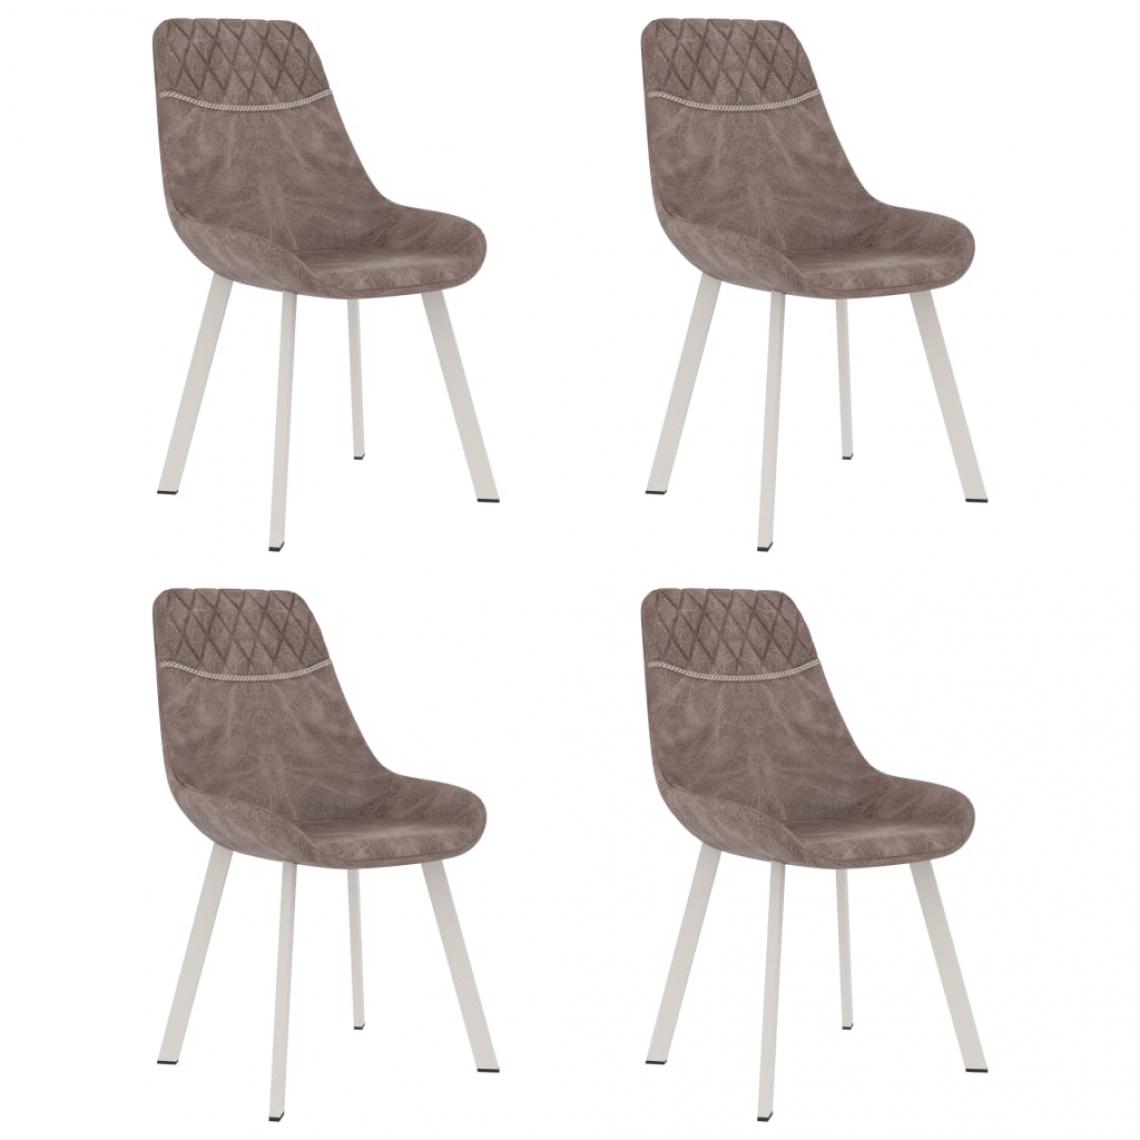 Decoshop26 - Lot de 4 chaises de salle à manger cuisine design moderne similicuir marron CDS021712 - Chaises